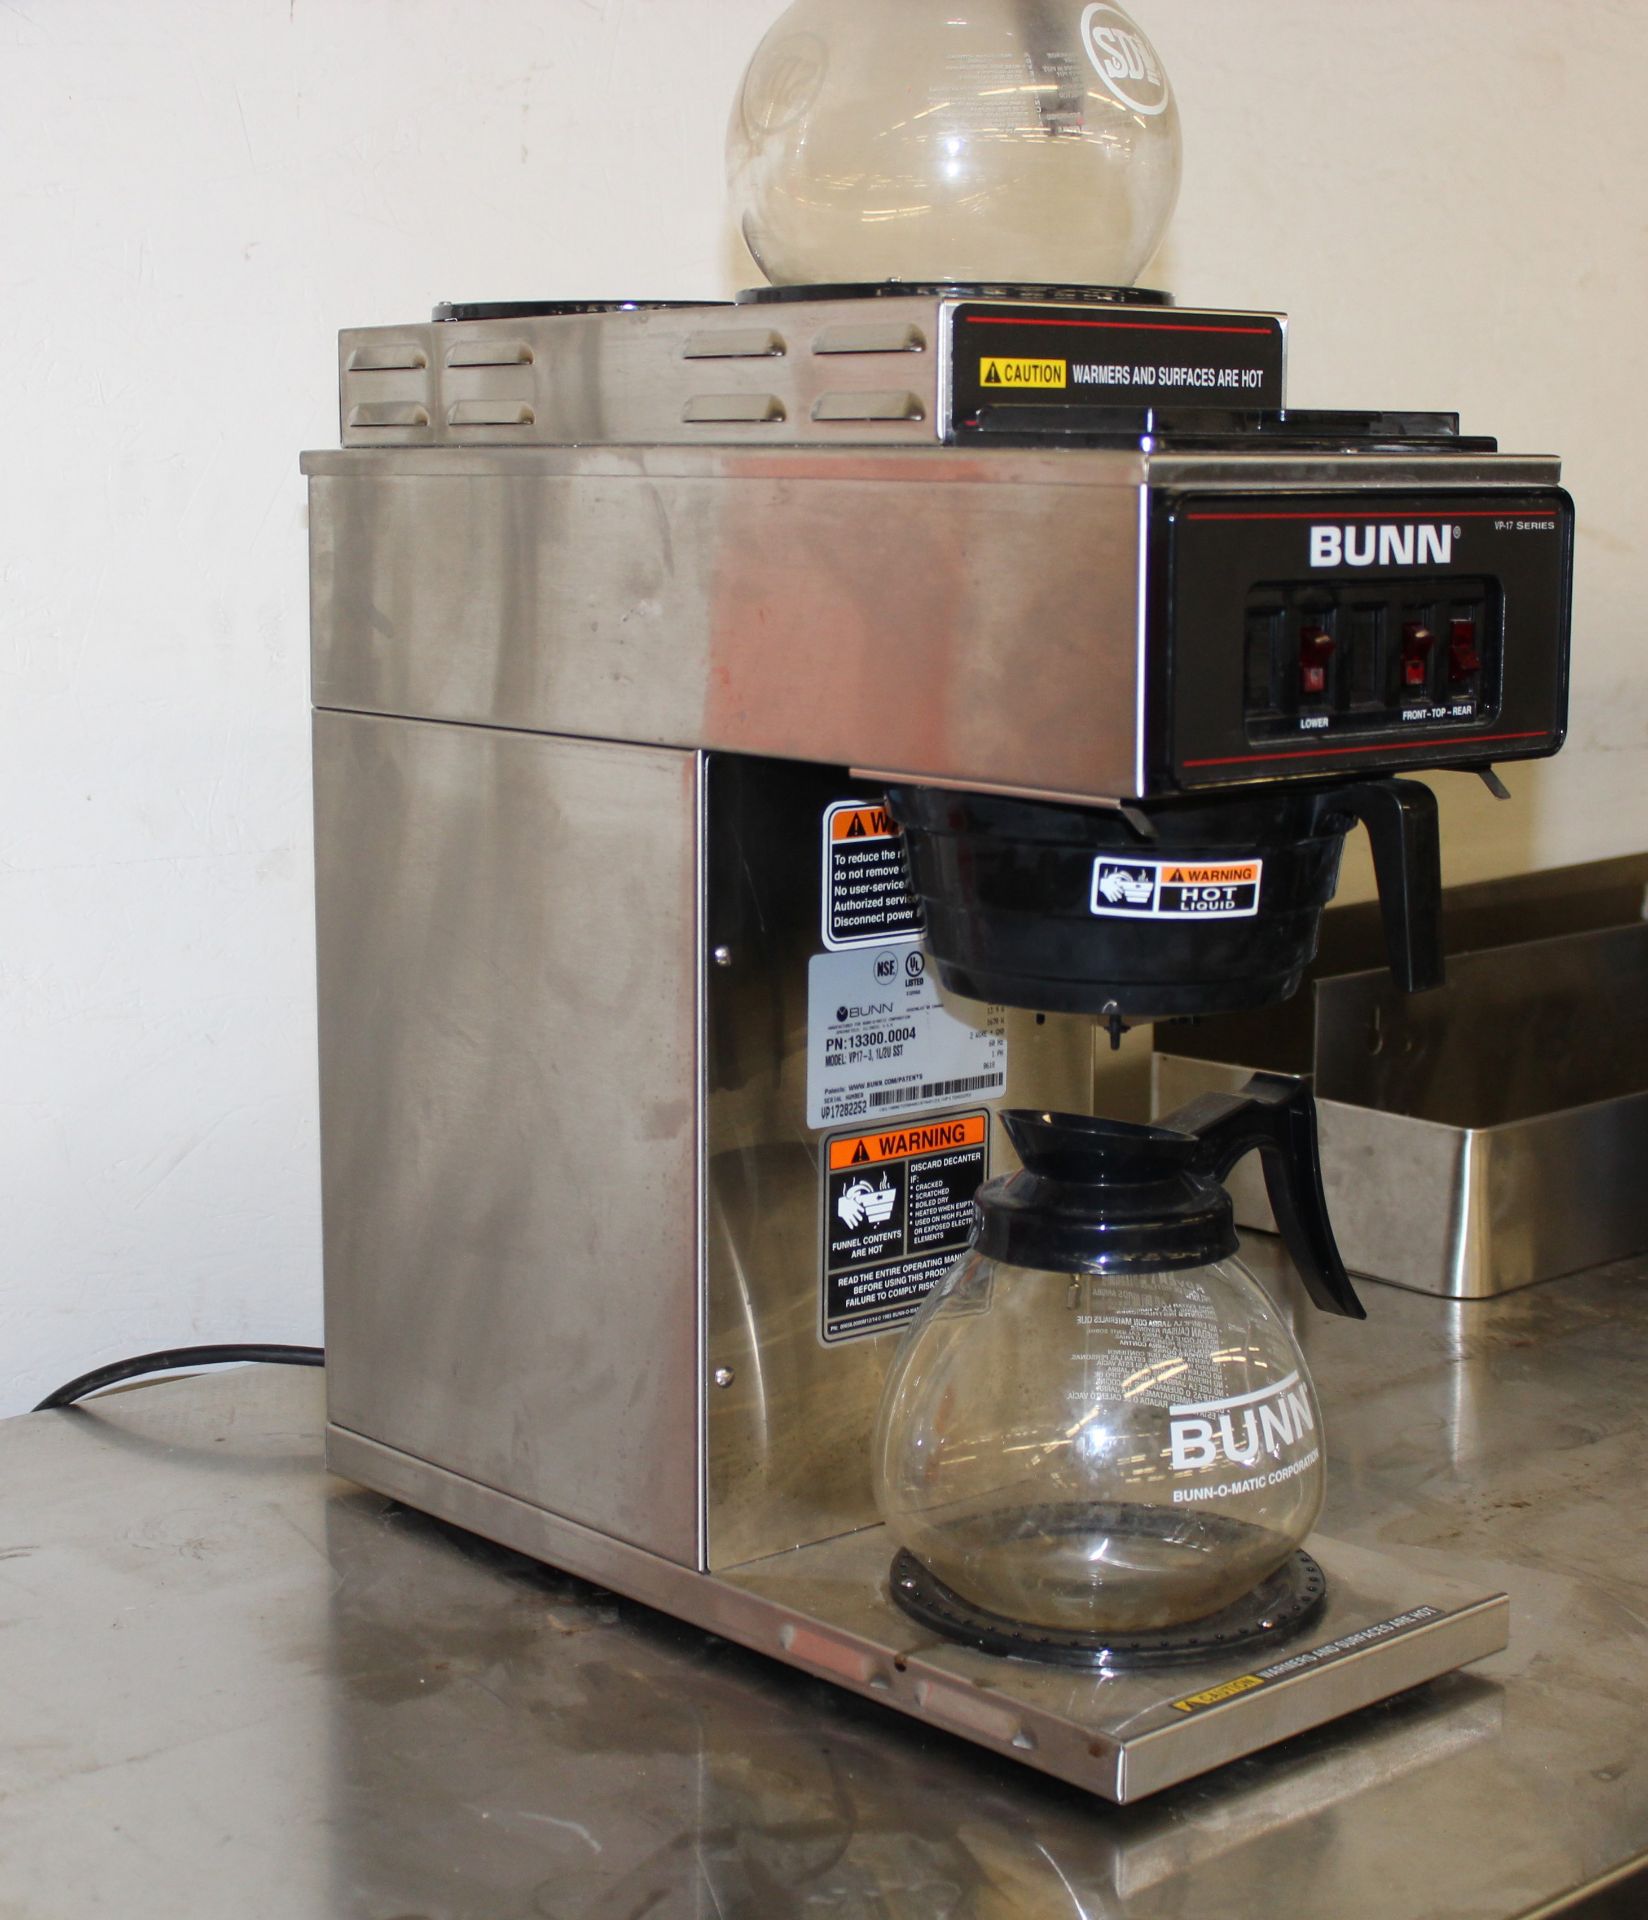 Bunn VP-17 series coffee maker